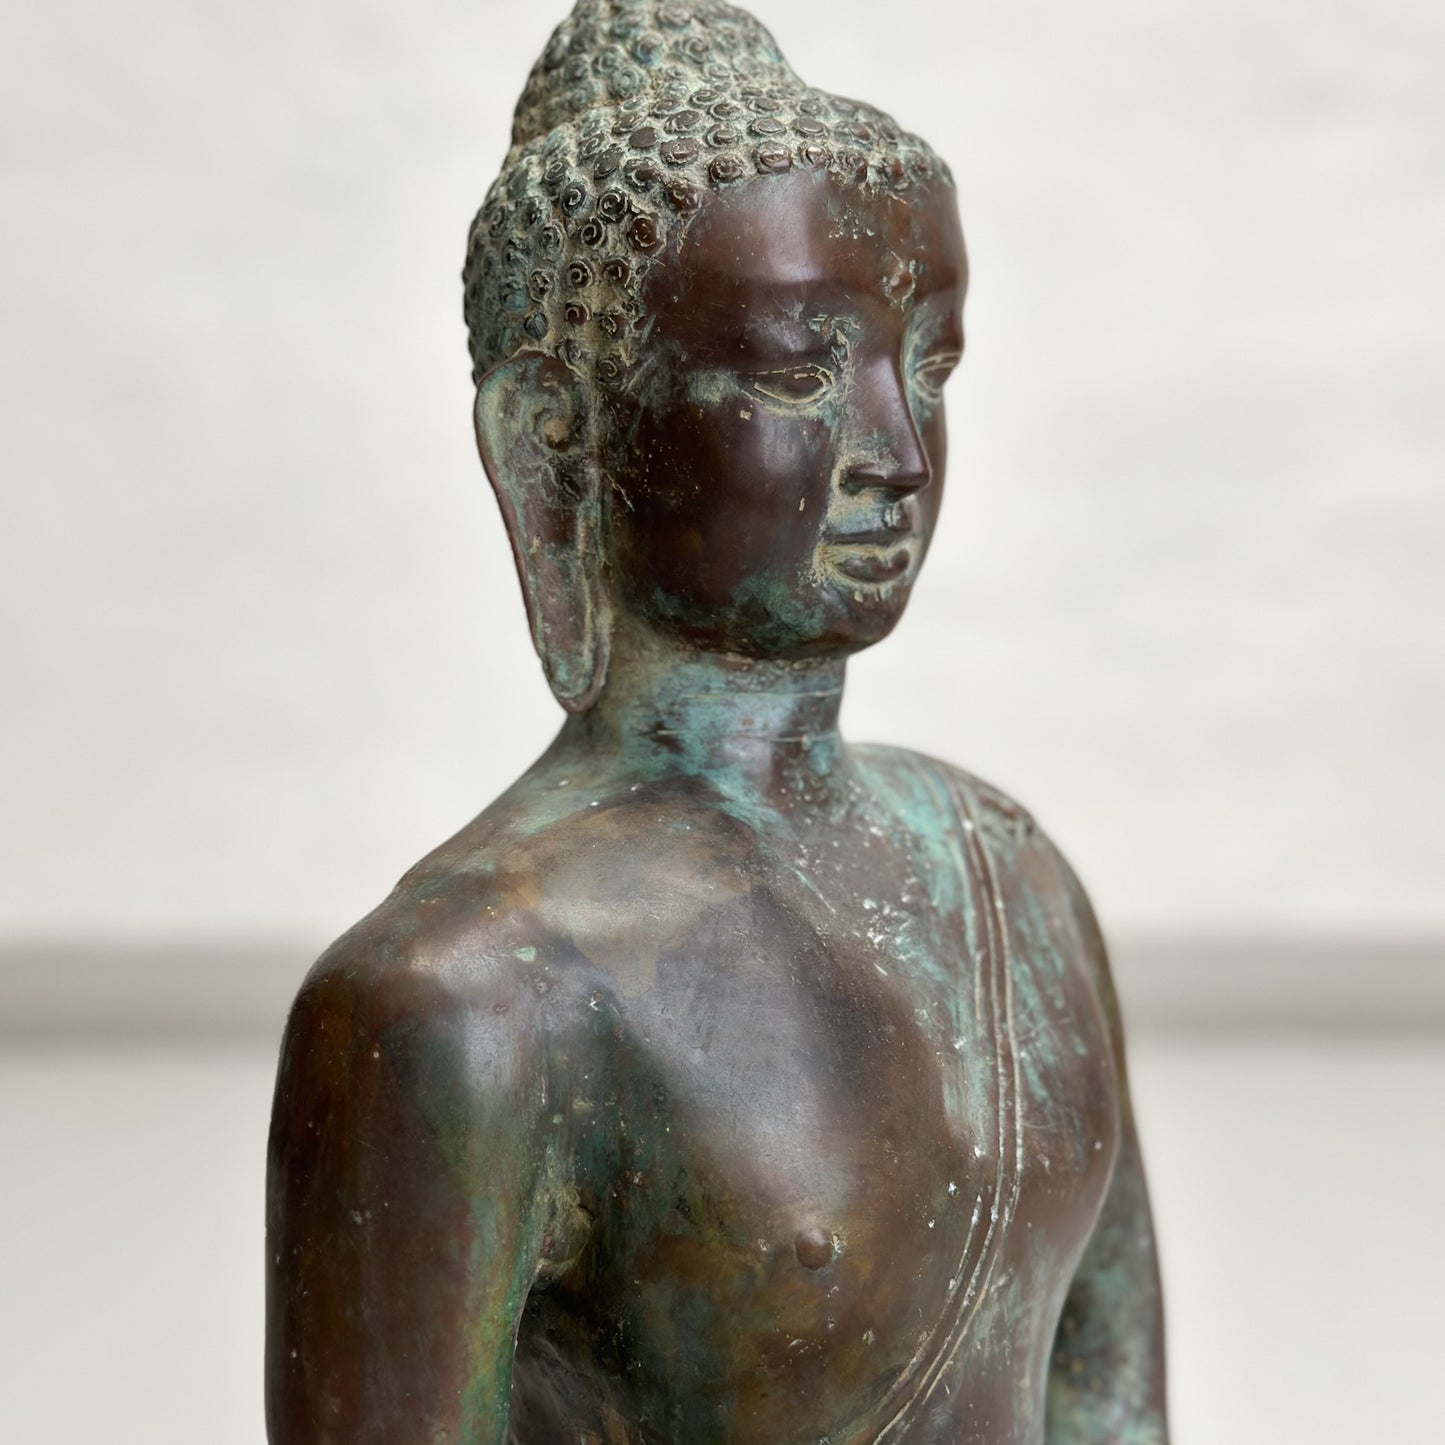 Seated Bronze Buddha Statue